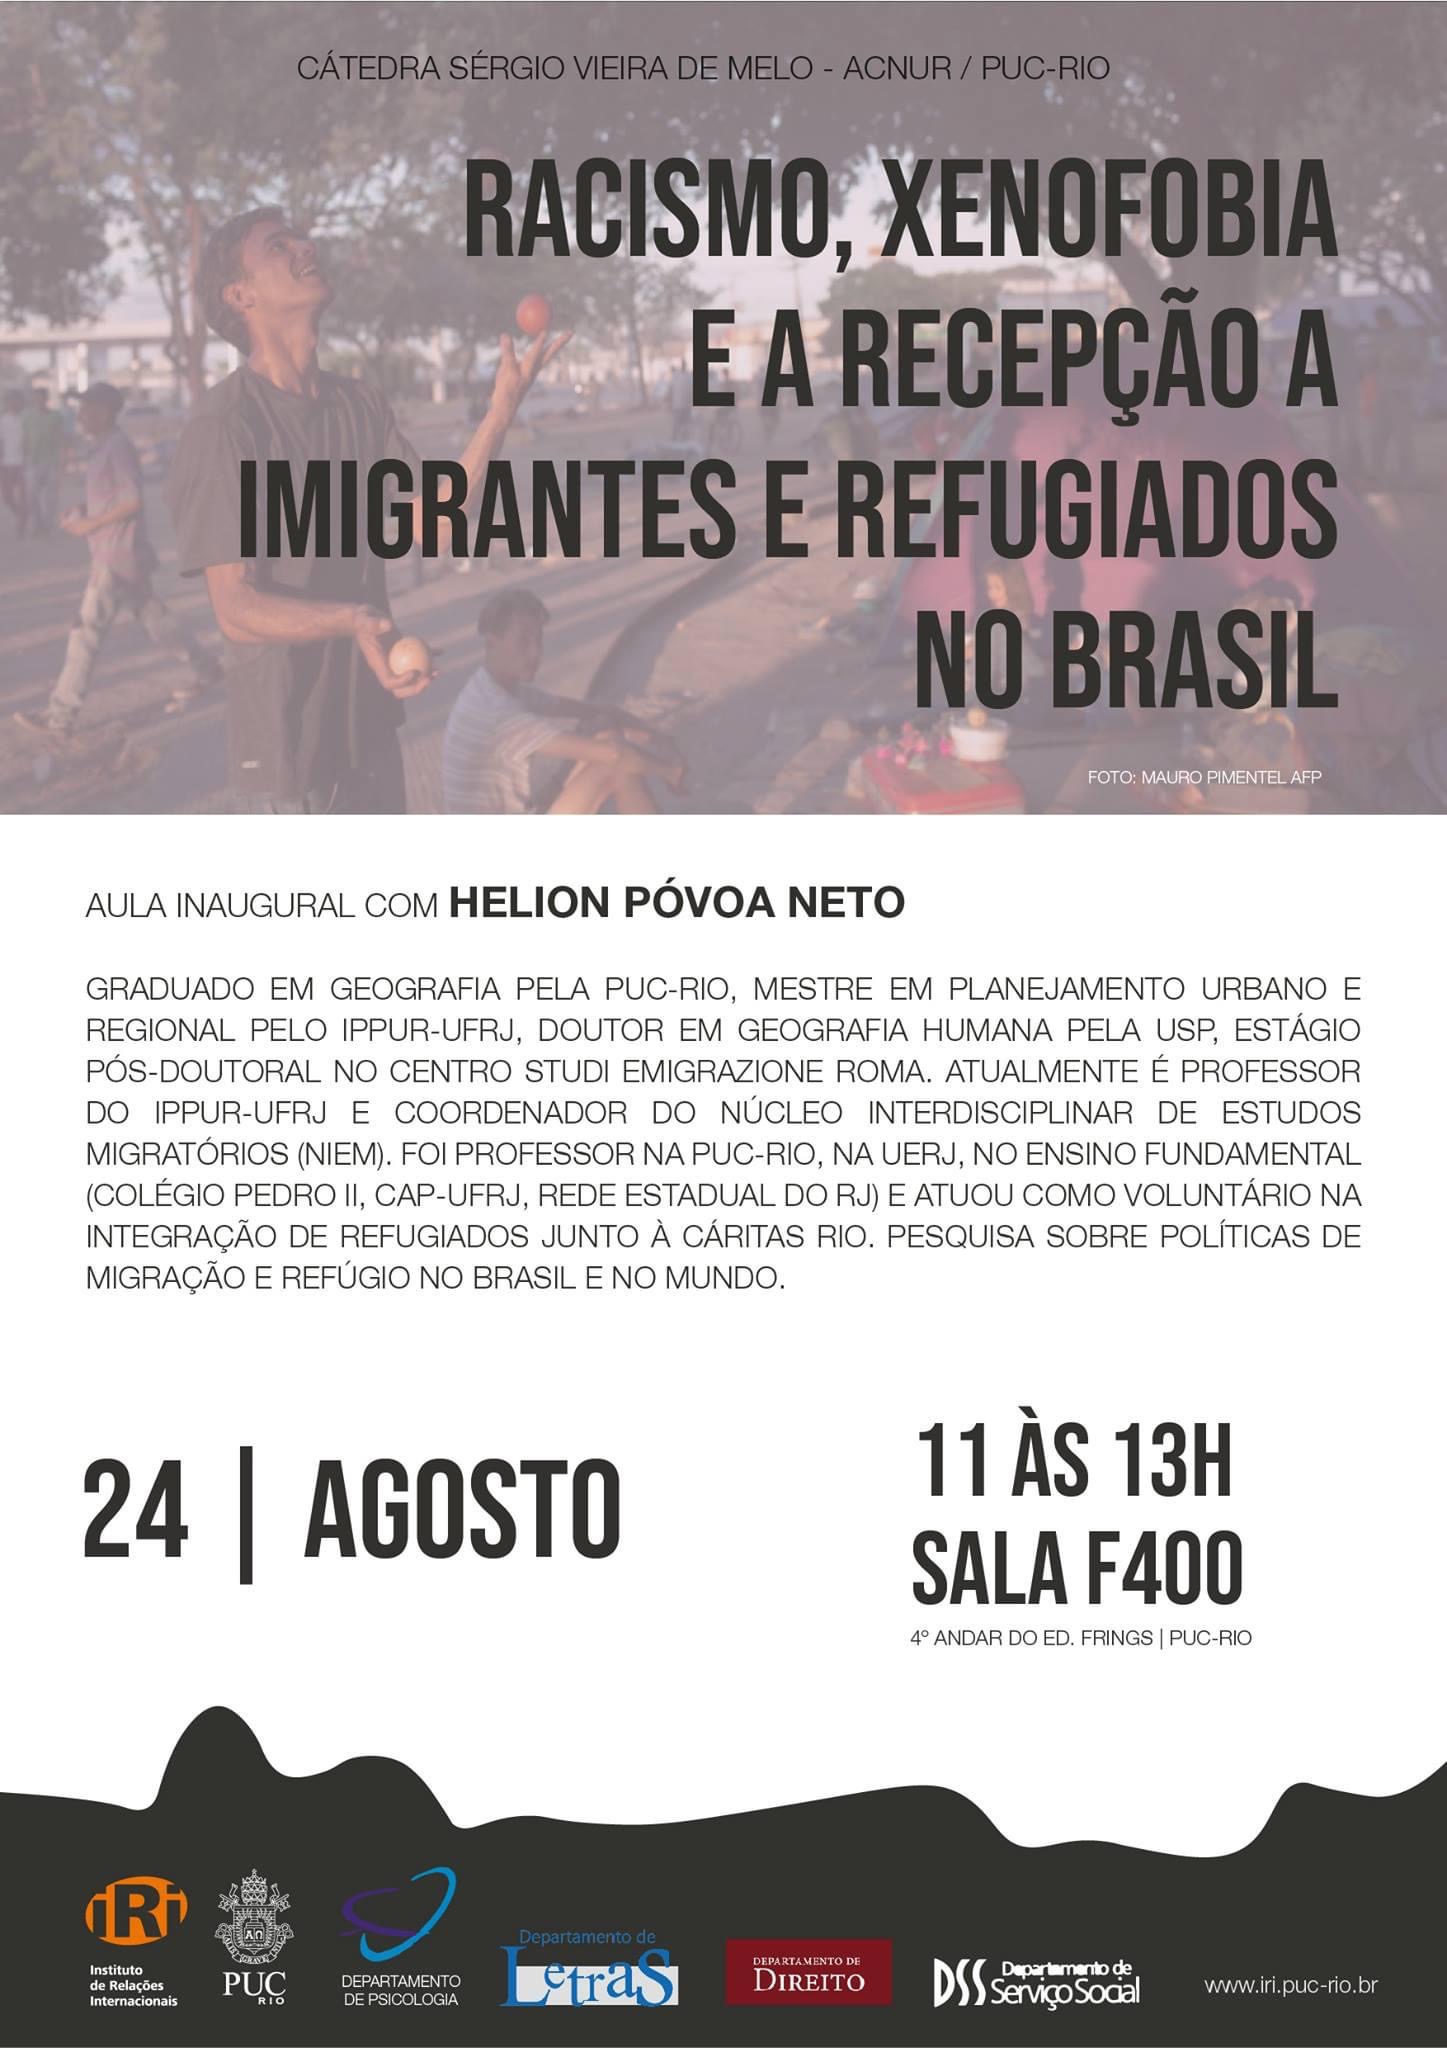 Racismo, xenofobia e recepção de imigrantes e refugiados no Brasil